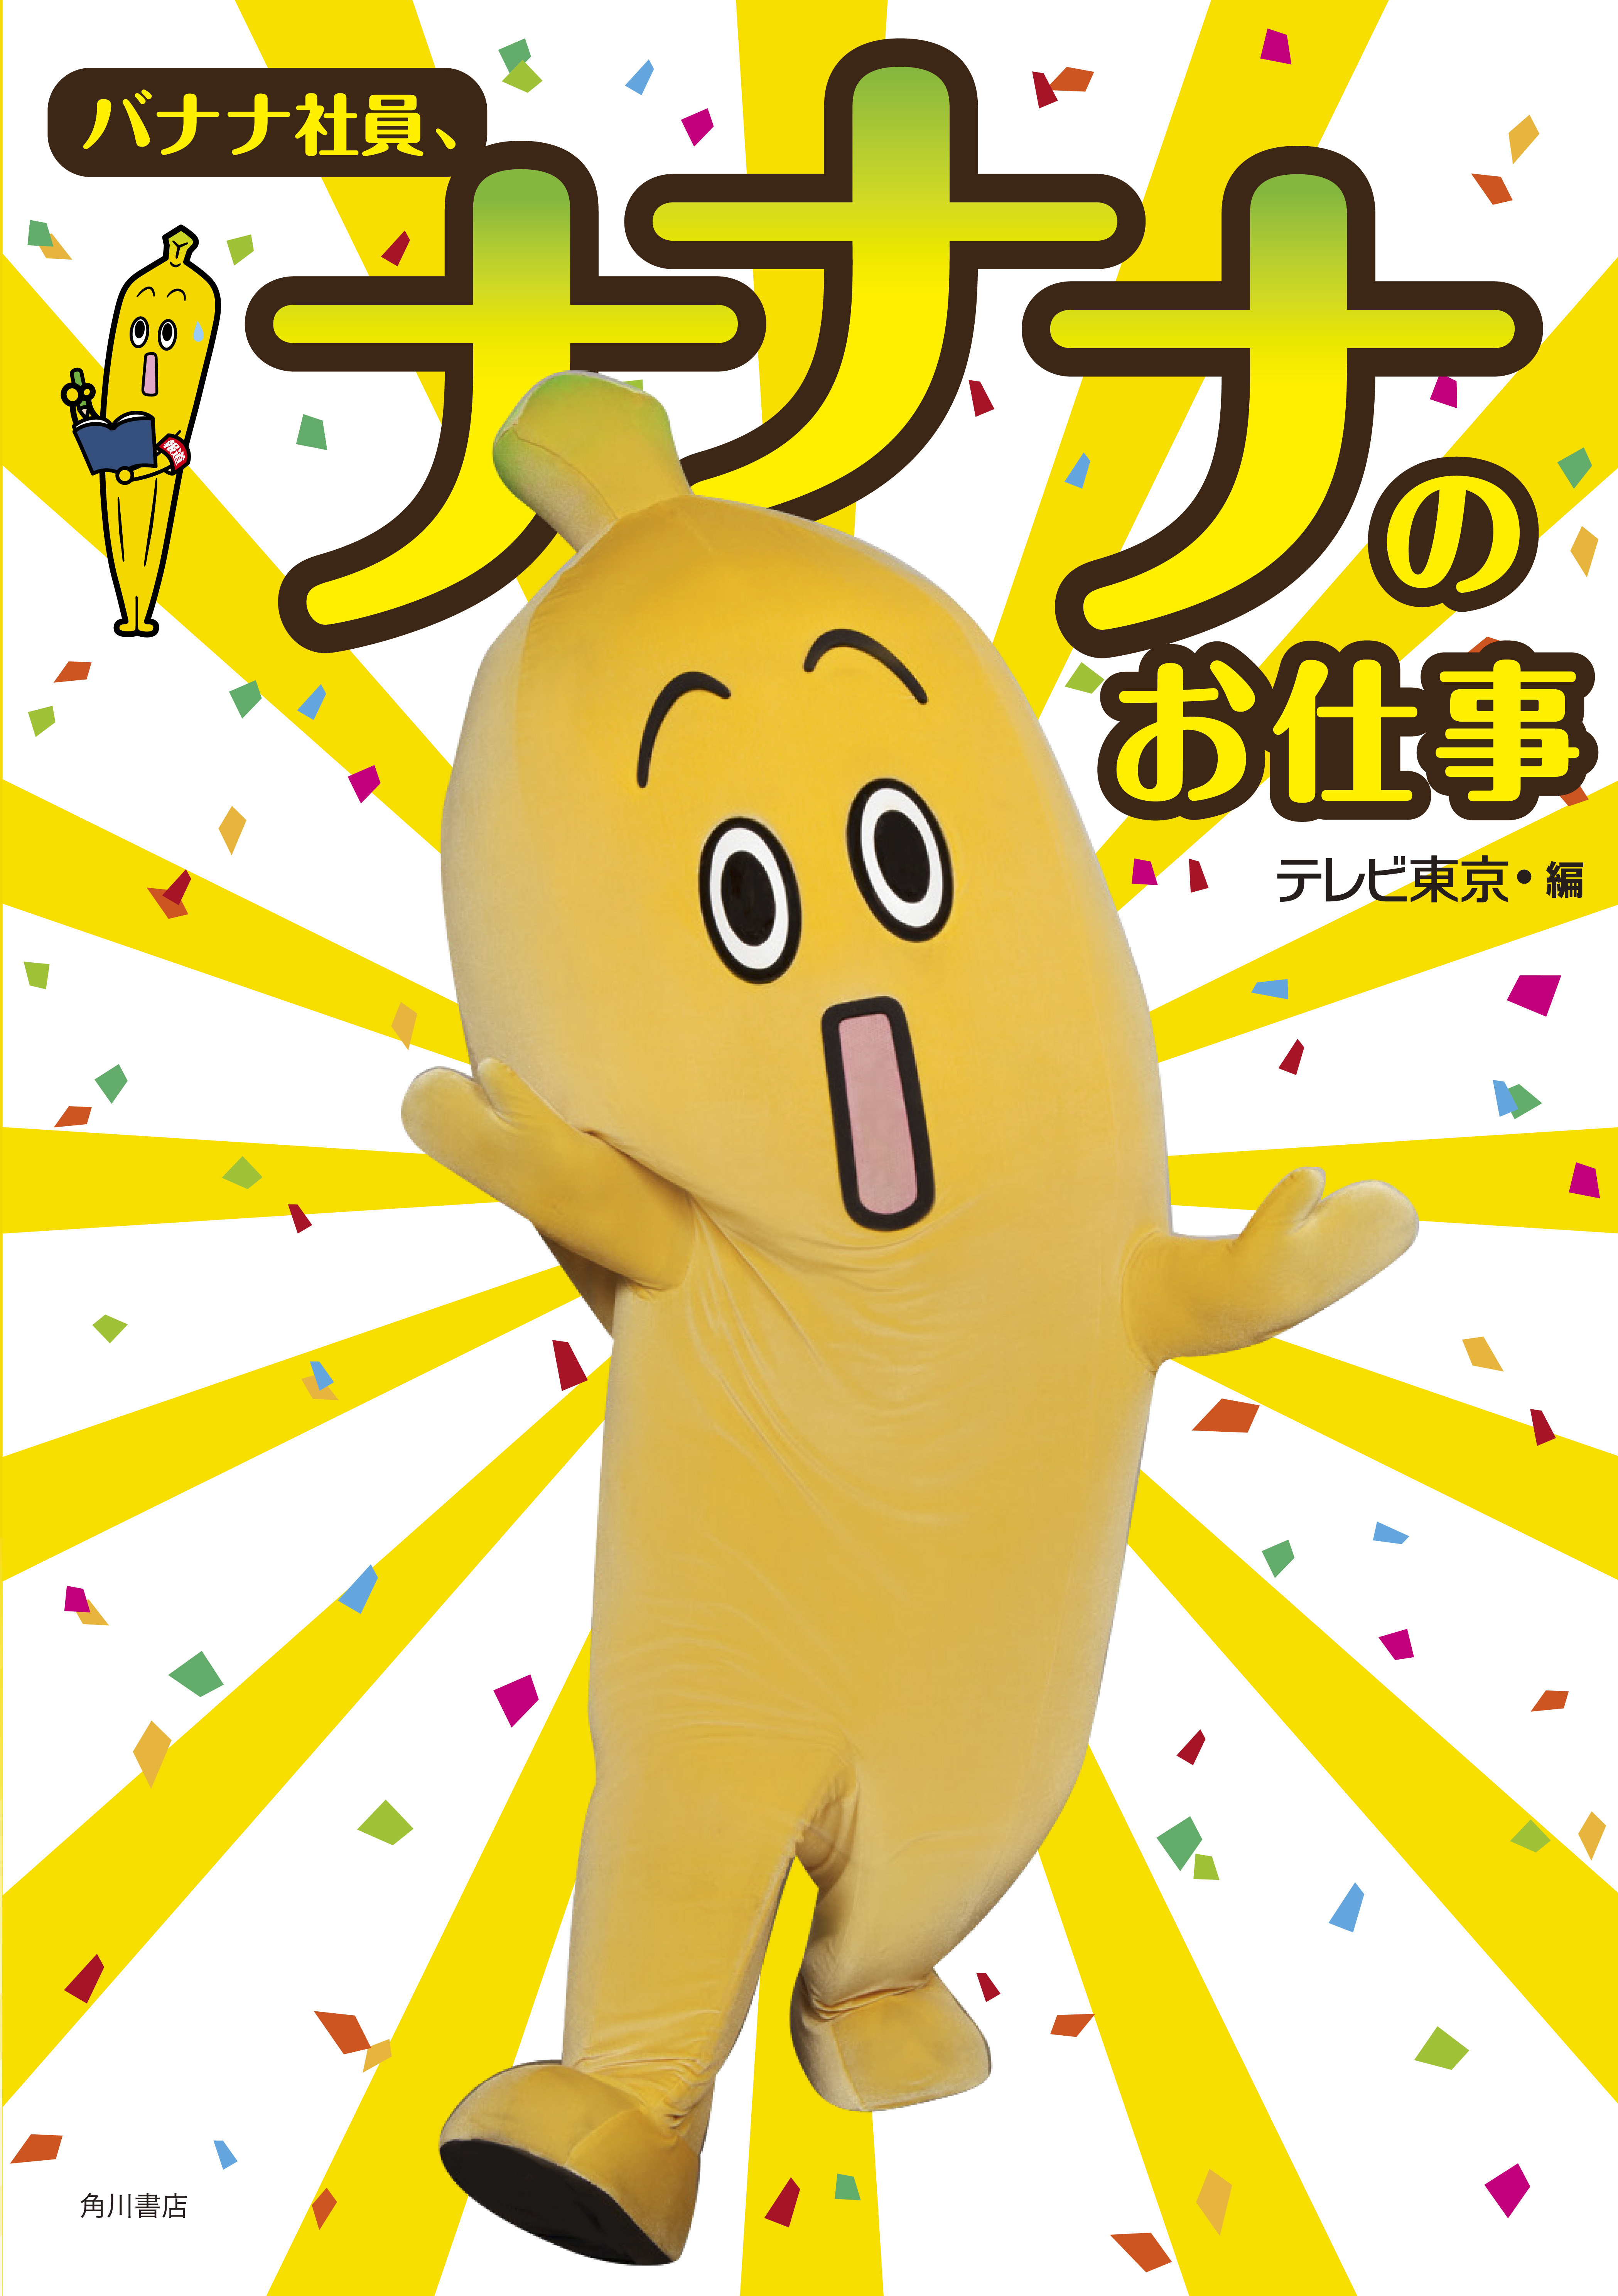 テレビ東京のキャラクター ナナナ 初のフォトブック発売決定 テレビ東京グループのプレスリリース